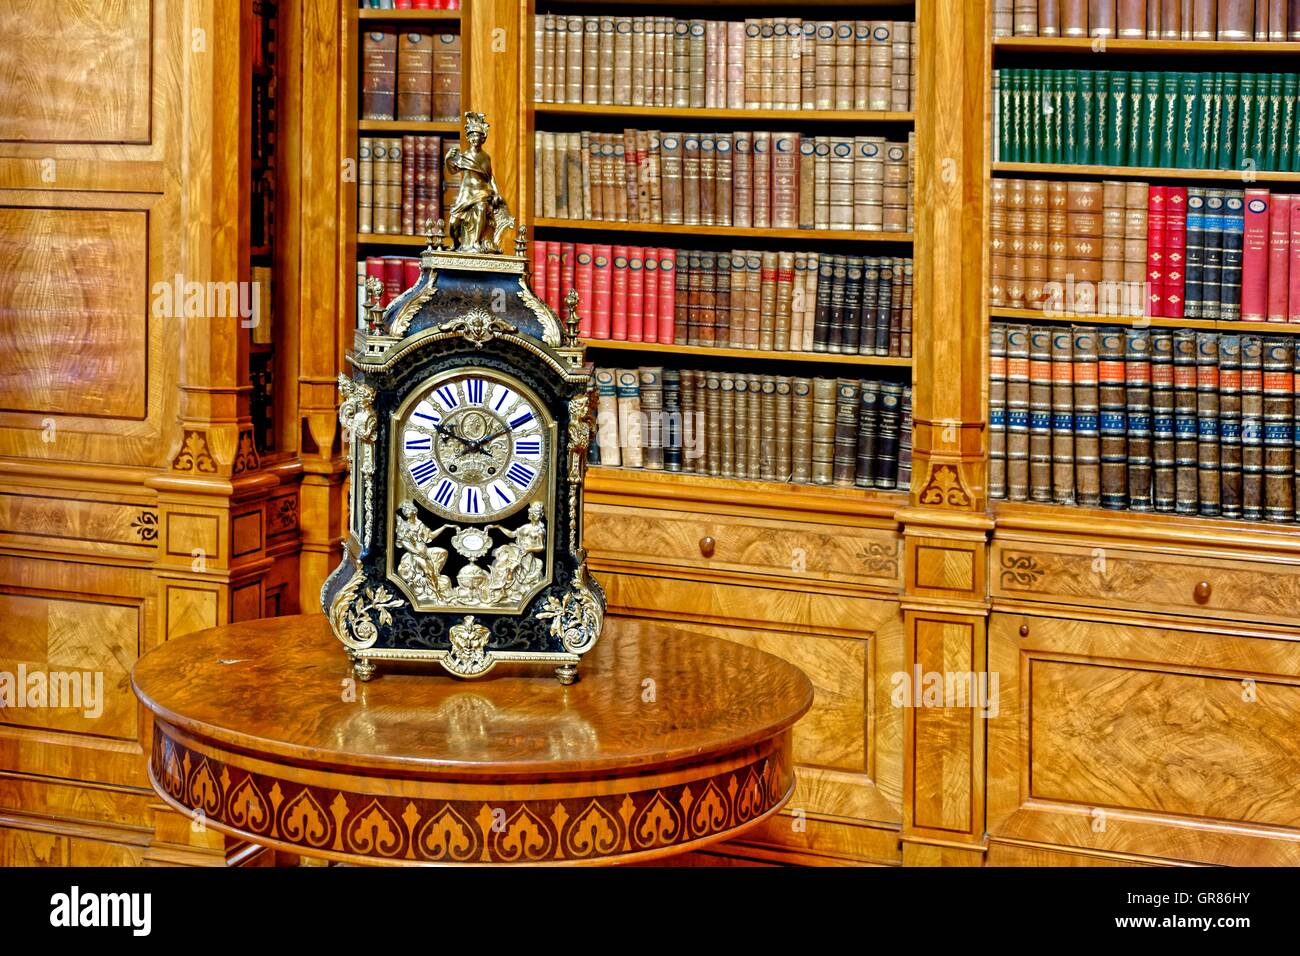 Horloge baroque dans la bibliothèque du monastère, la Hongrie Zirc Banque D'Images